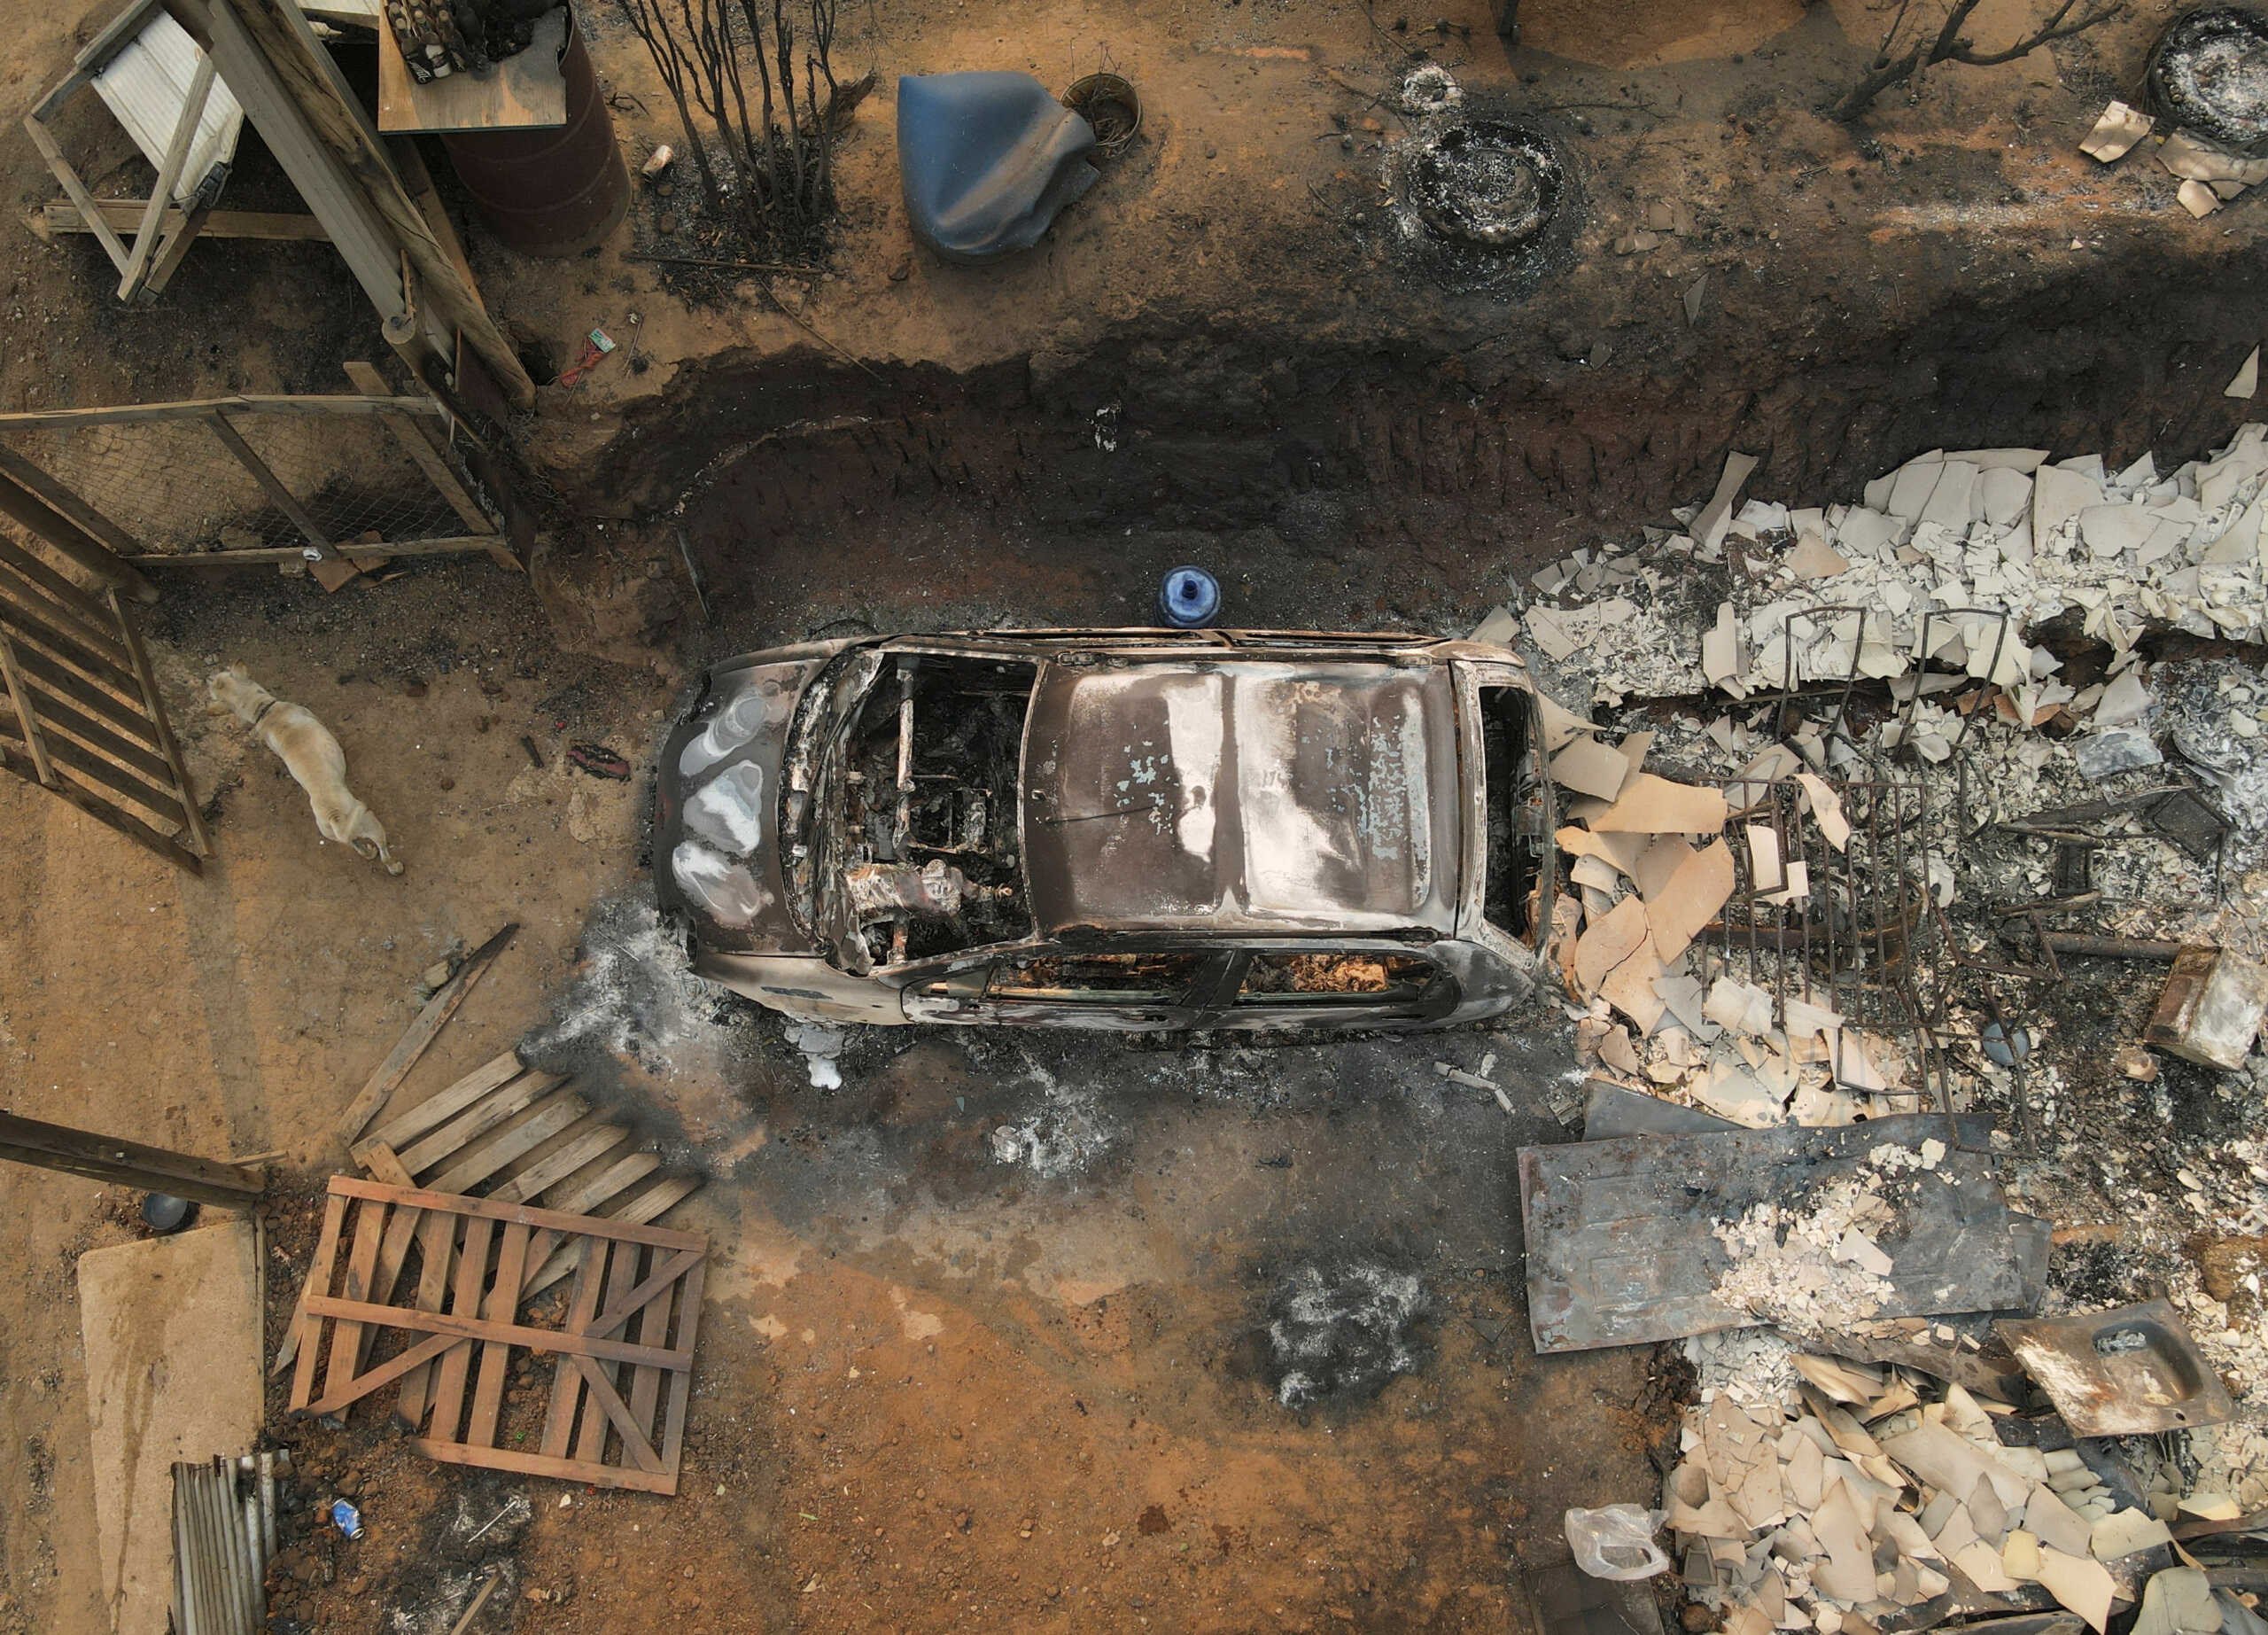 Νέο «Μάτι» στη Χιλή: Απανθρακώθηκαν μέσα στα αυτοκίνητά τους προσπαθώντας να σωθούν από τις φλόγες